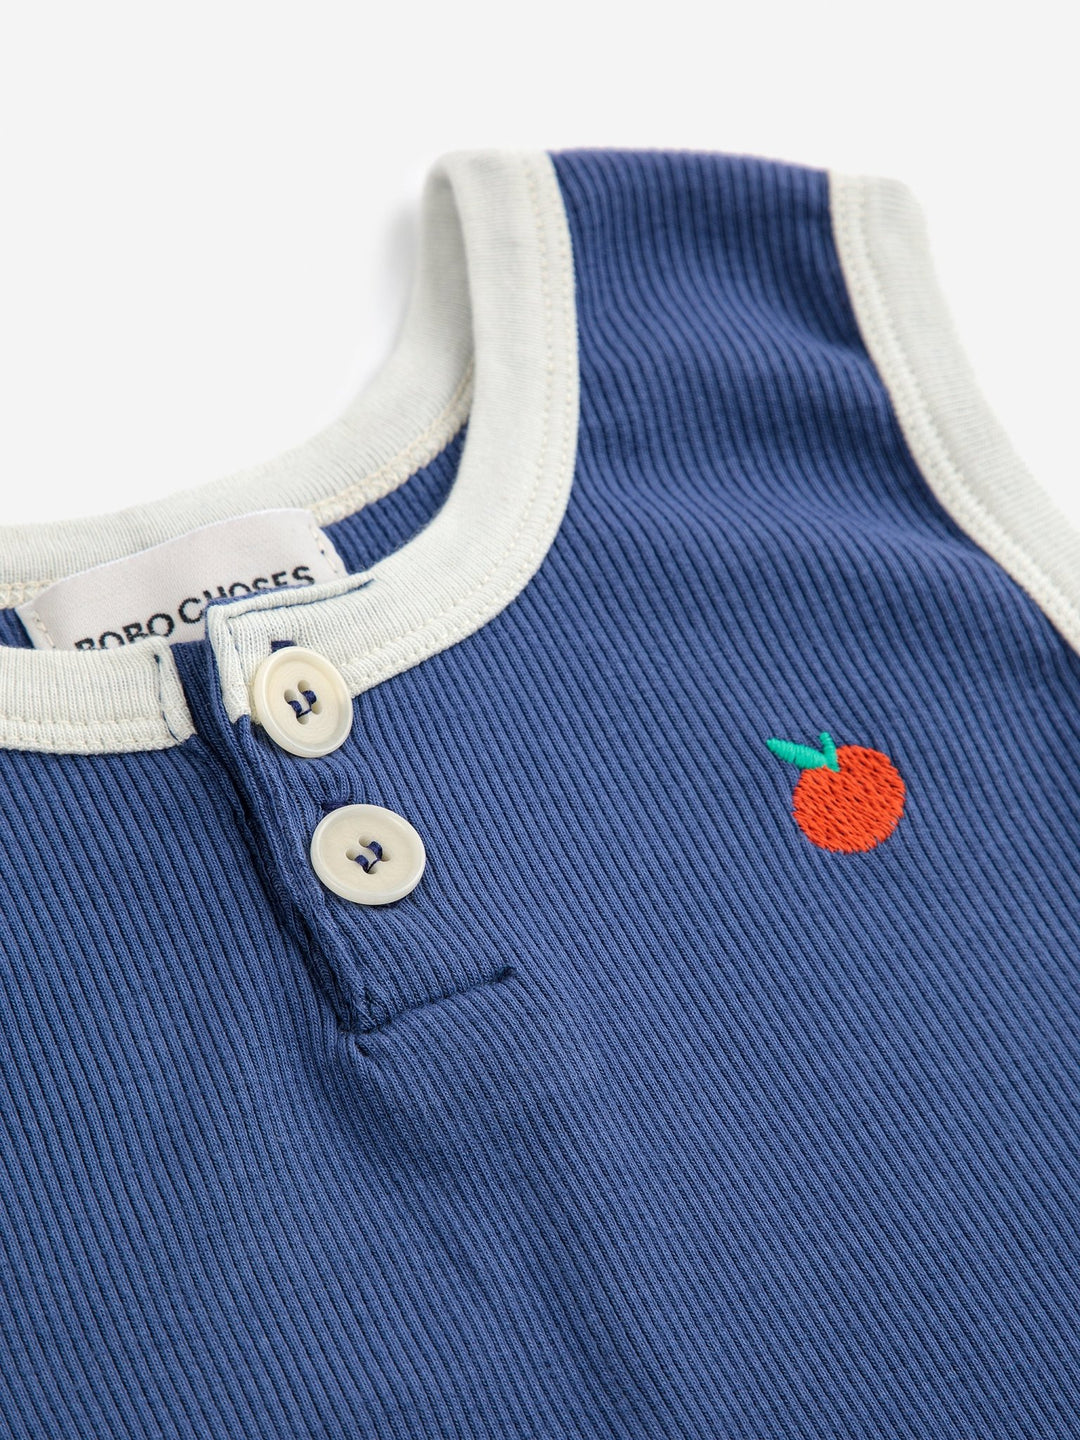 Baby Tomato Playsuit - Navy Blue - Posh New York